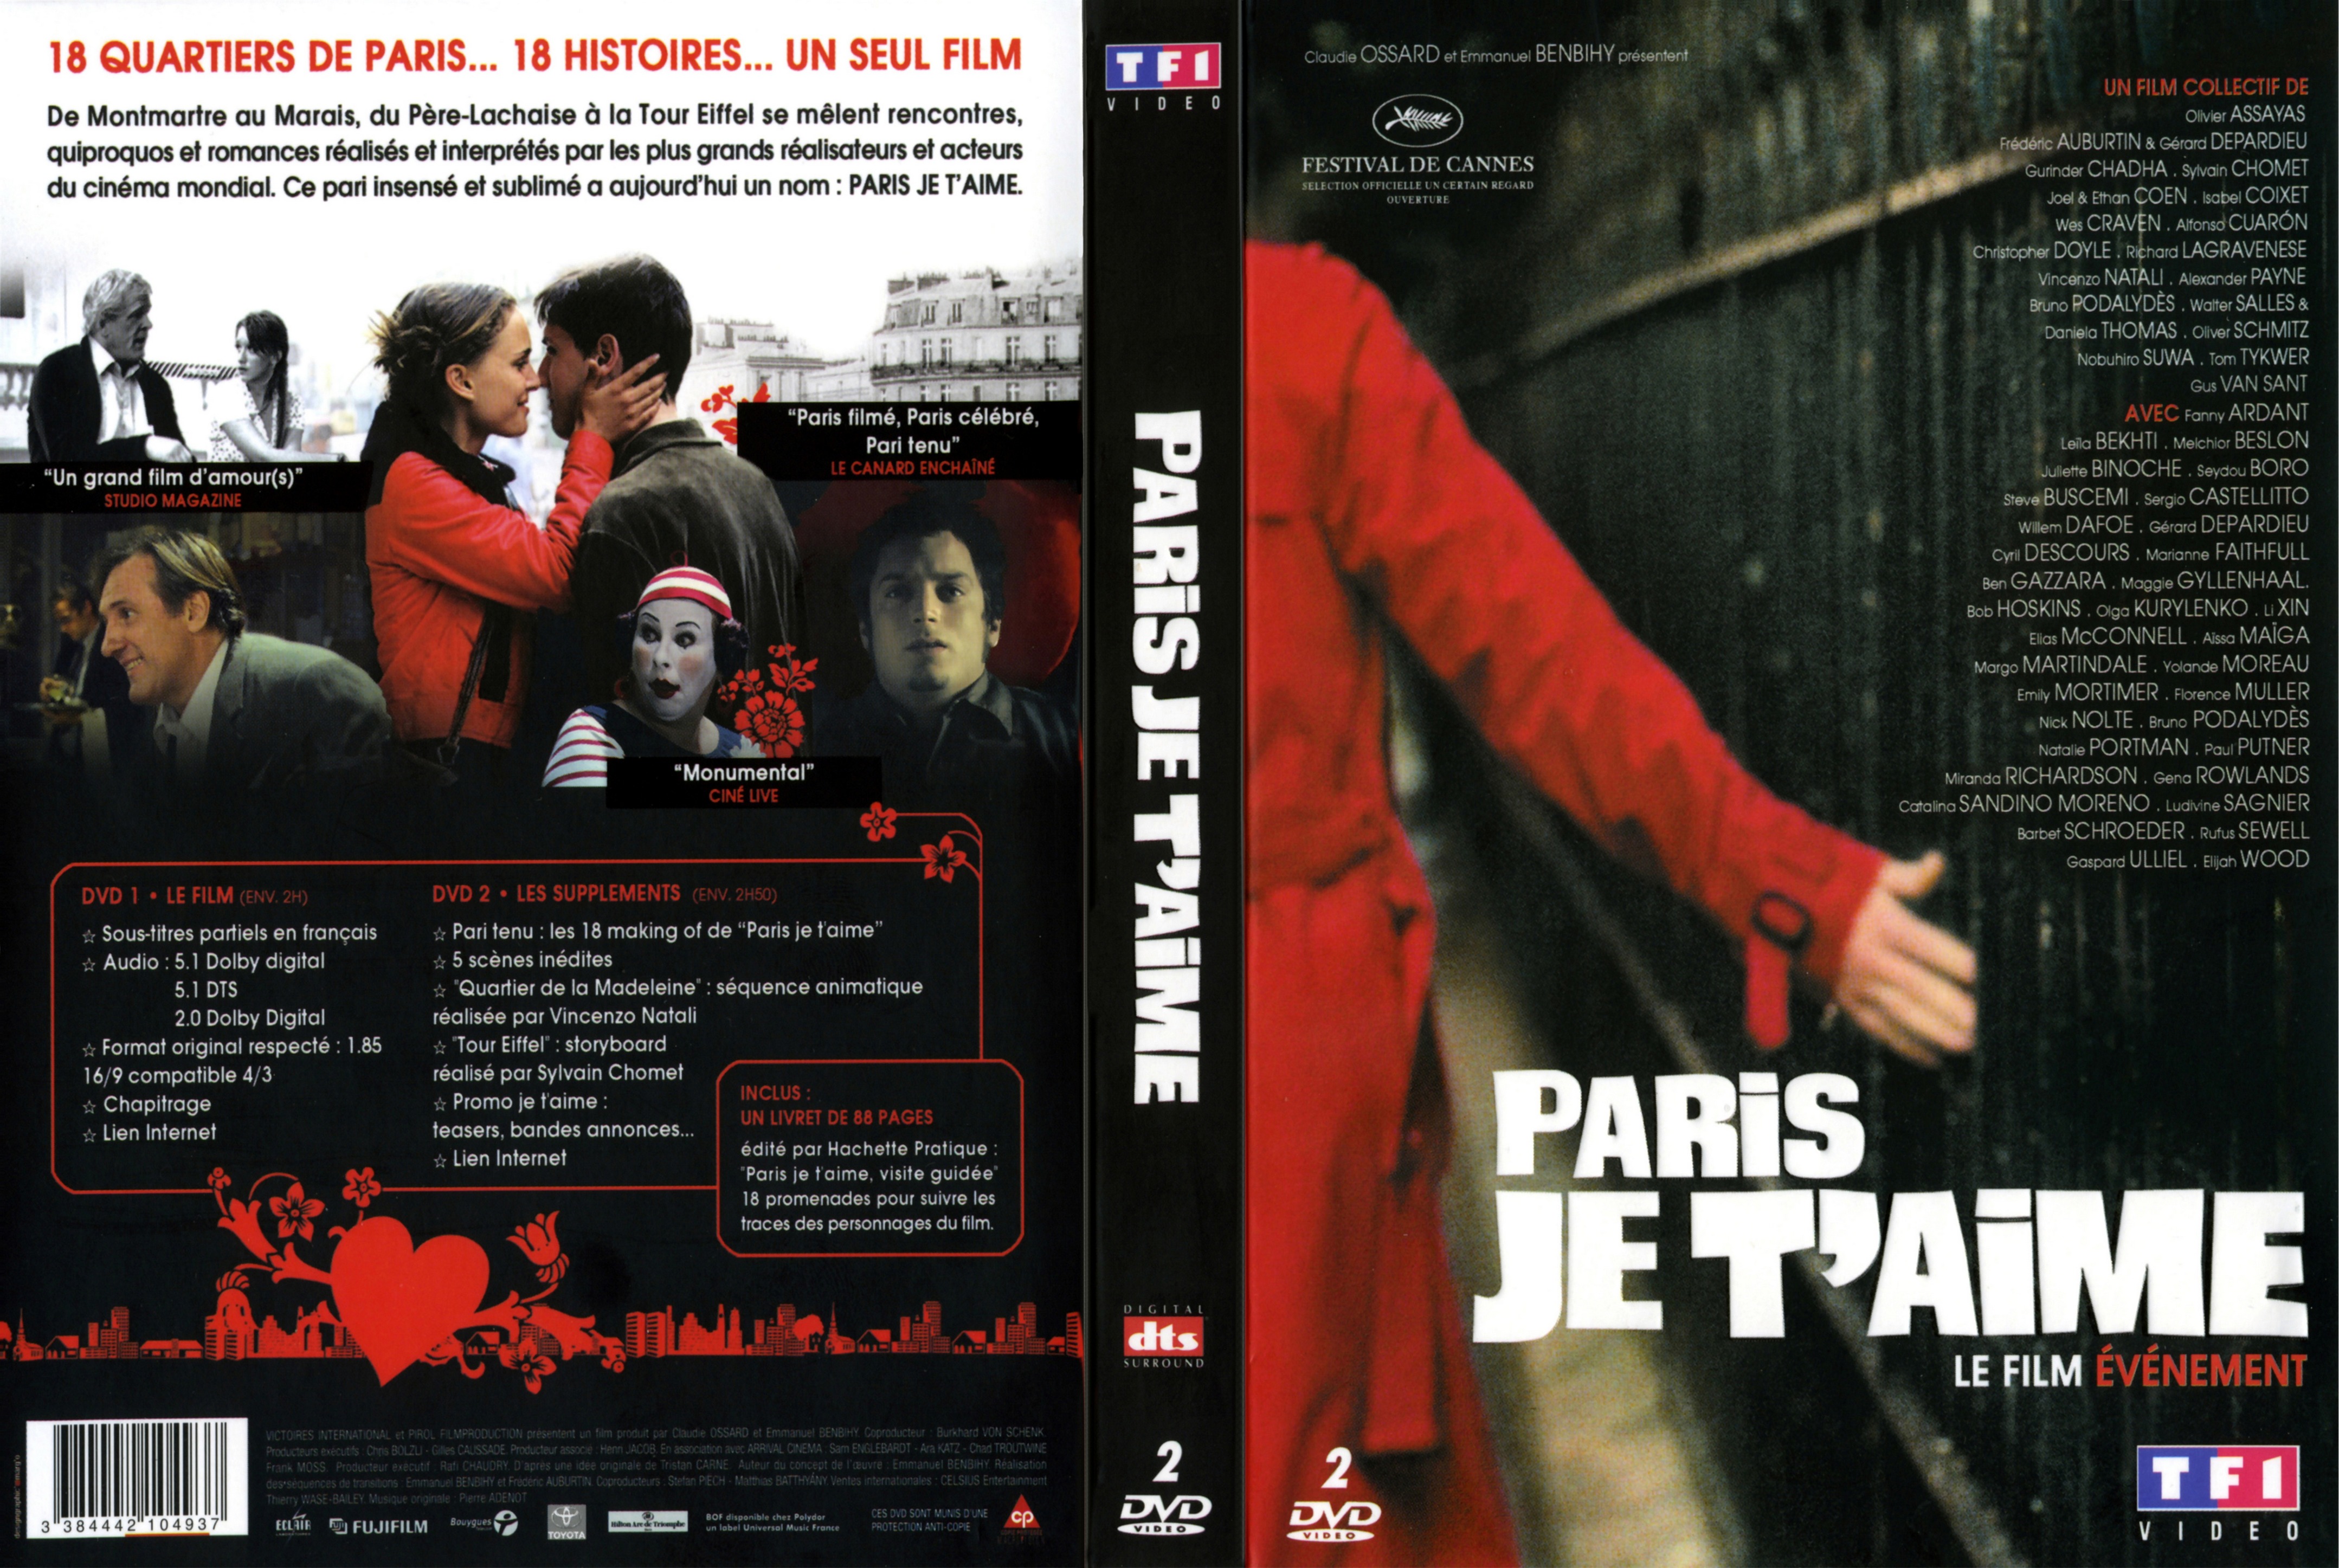 Jaquette DVD Paris je t